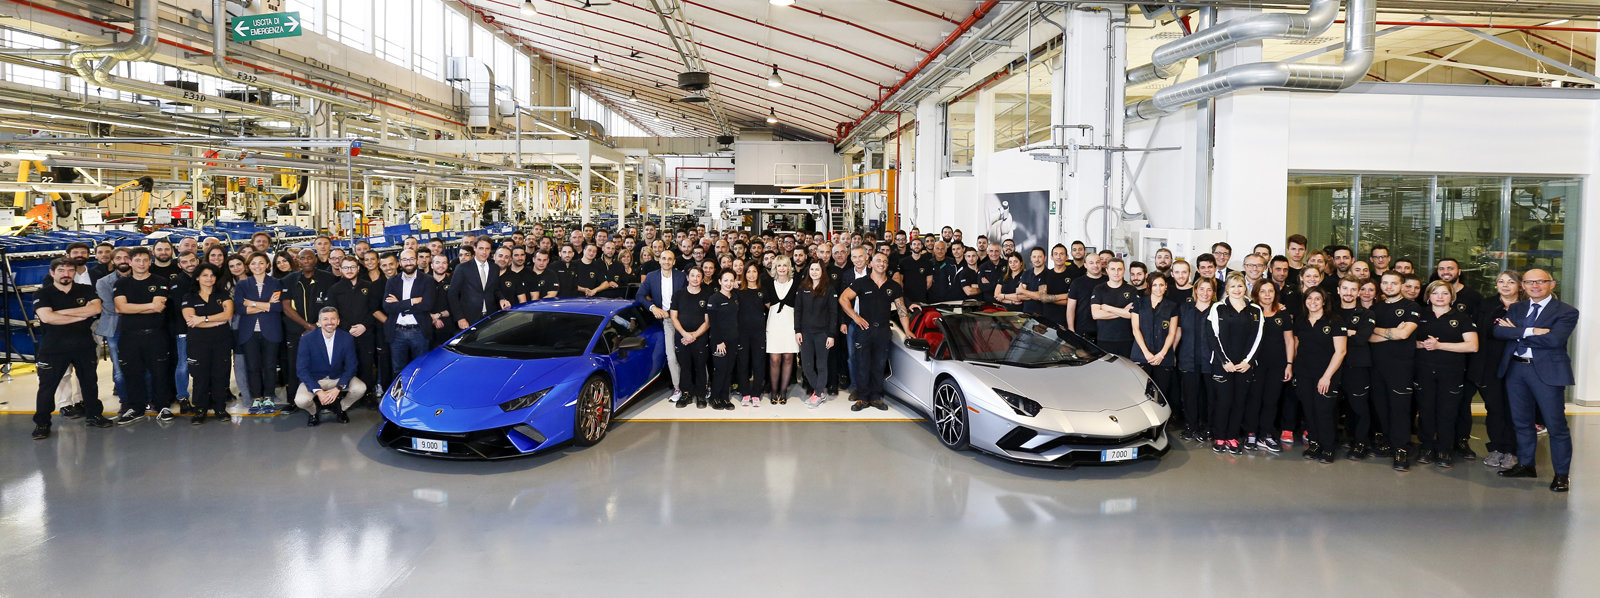 Společnost Lamborghini oslavila výrobu Aventadoru s číslem 7000 a Huracánu s číslem 9000